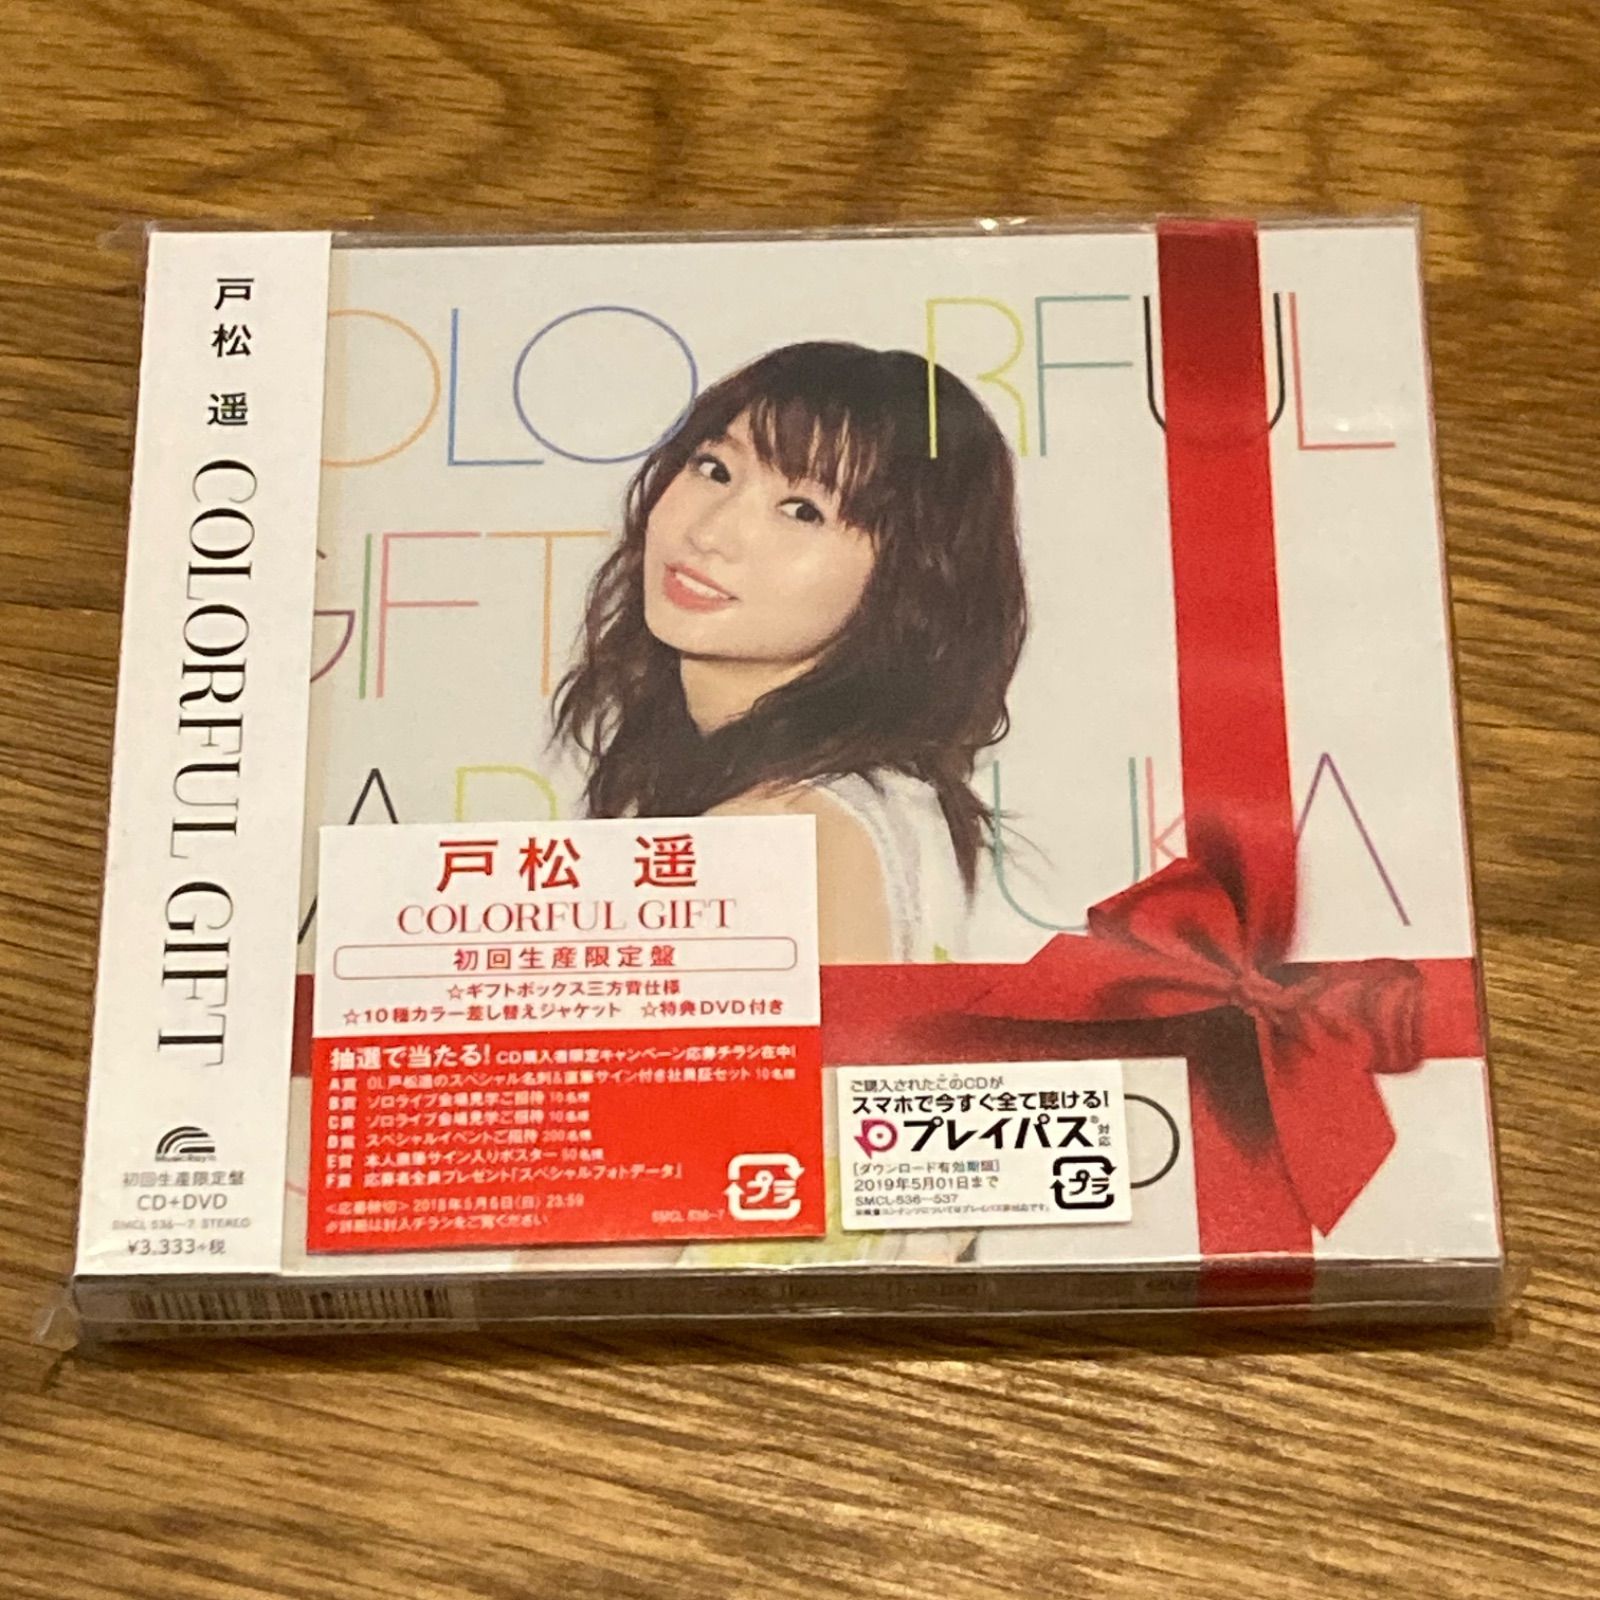 戸松遥/ COLORFUL GIFT 初回生産限定盤 【CD+DVD】 - 昭和生まれ40代